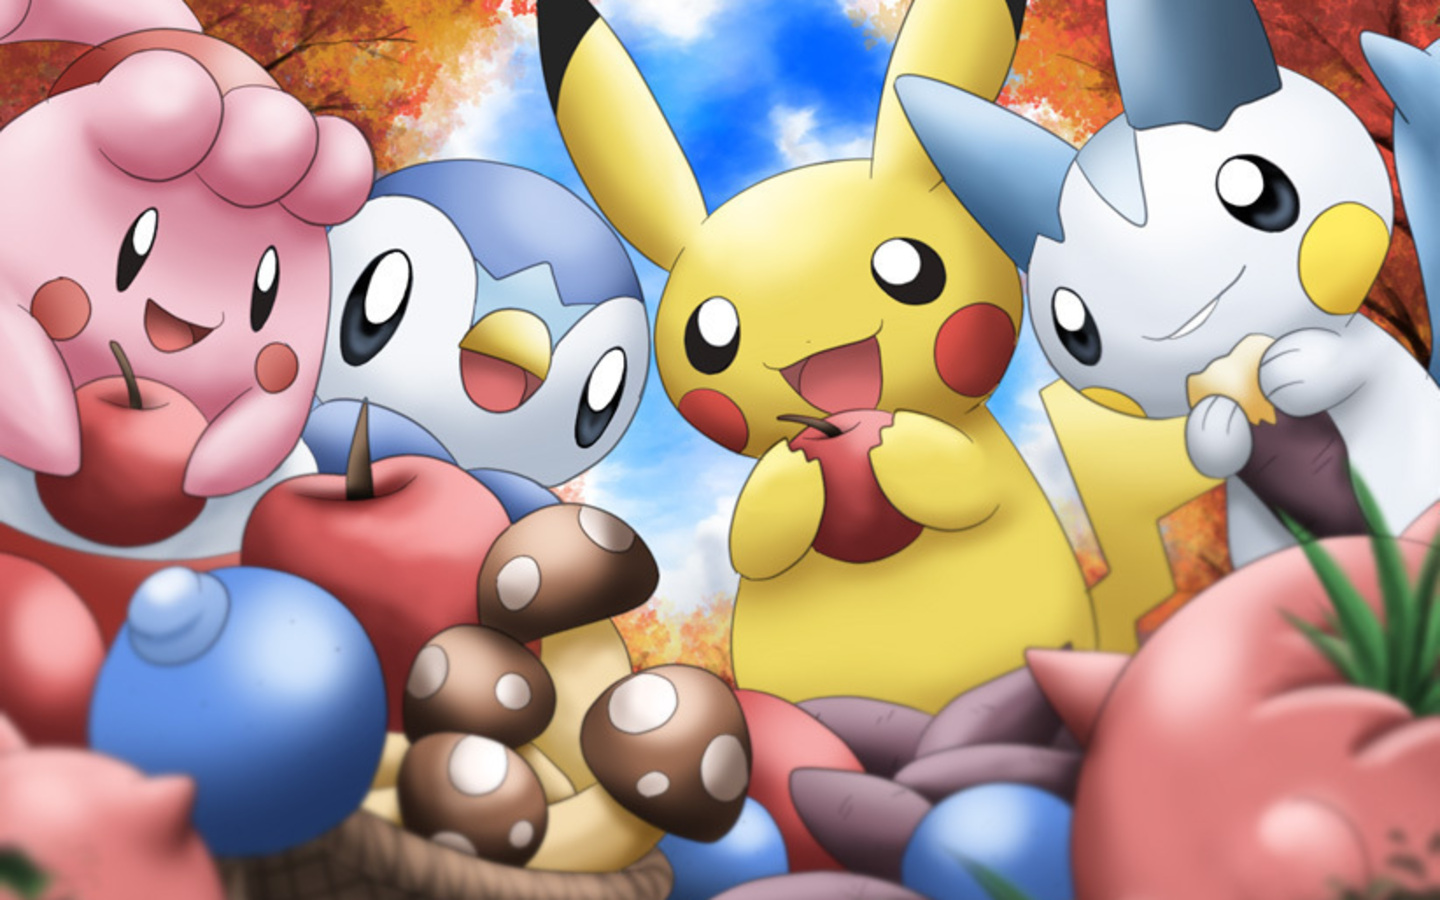 Cute Pokemon Wallpaper Full HD